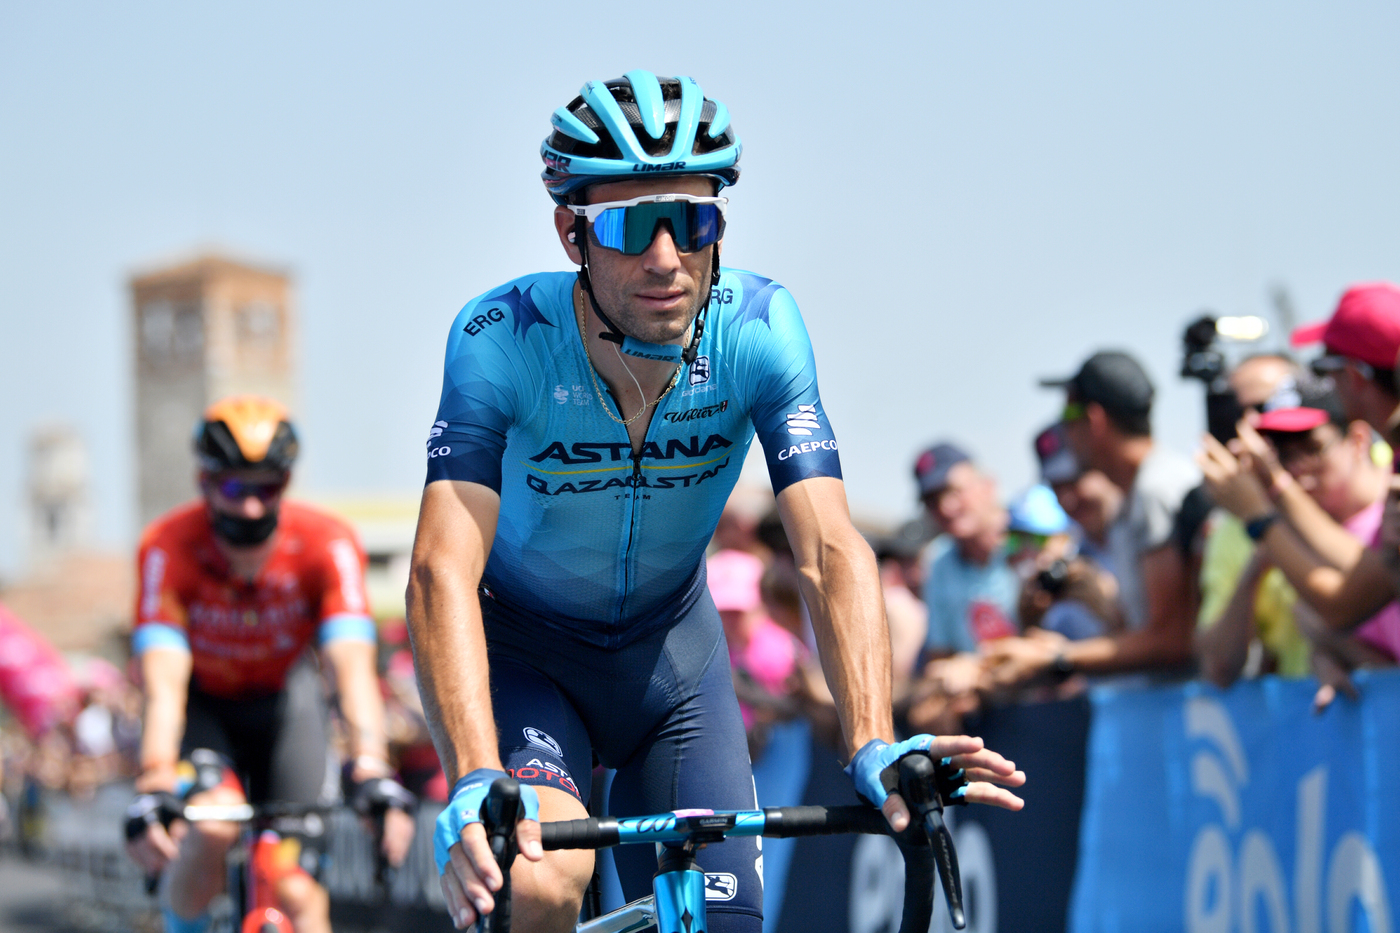 Giro d’Italia 2022, Vincenzo Nibali più brillante rispetto alle ultime tappe. Ora un ultimo sforzo per un 4° posto di prestigio